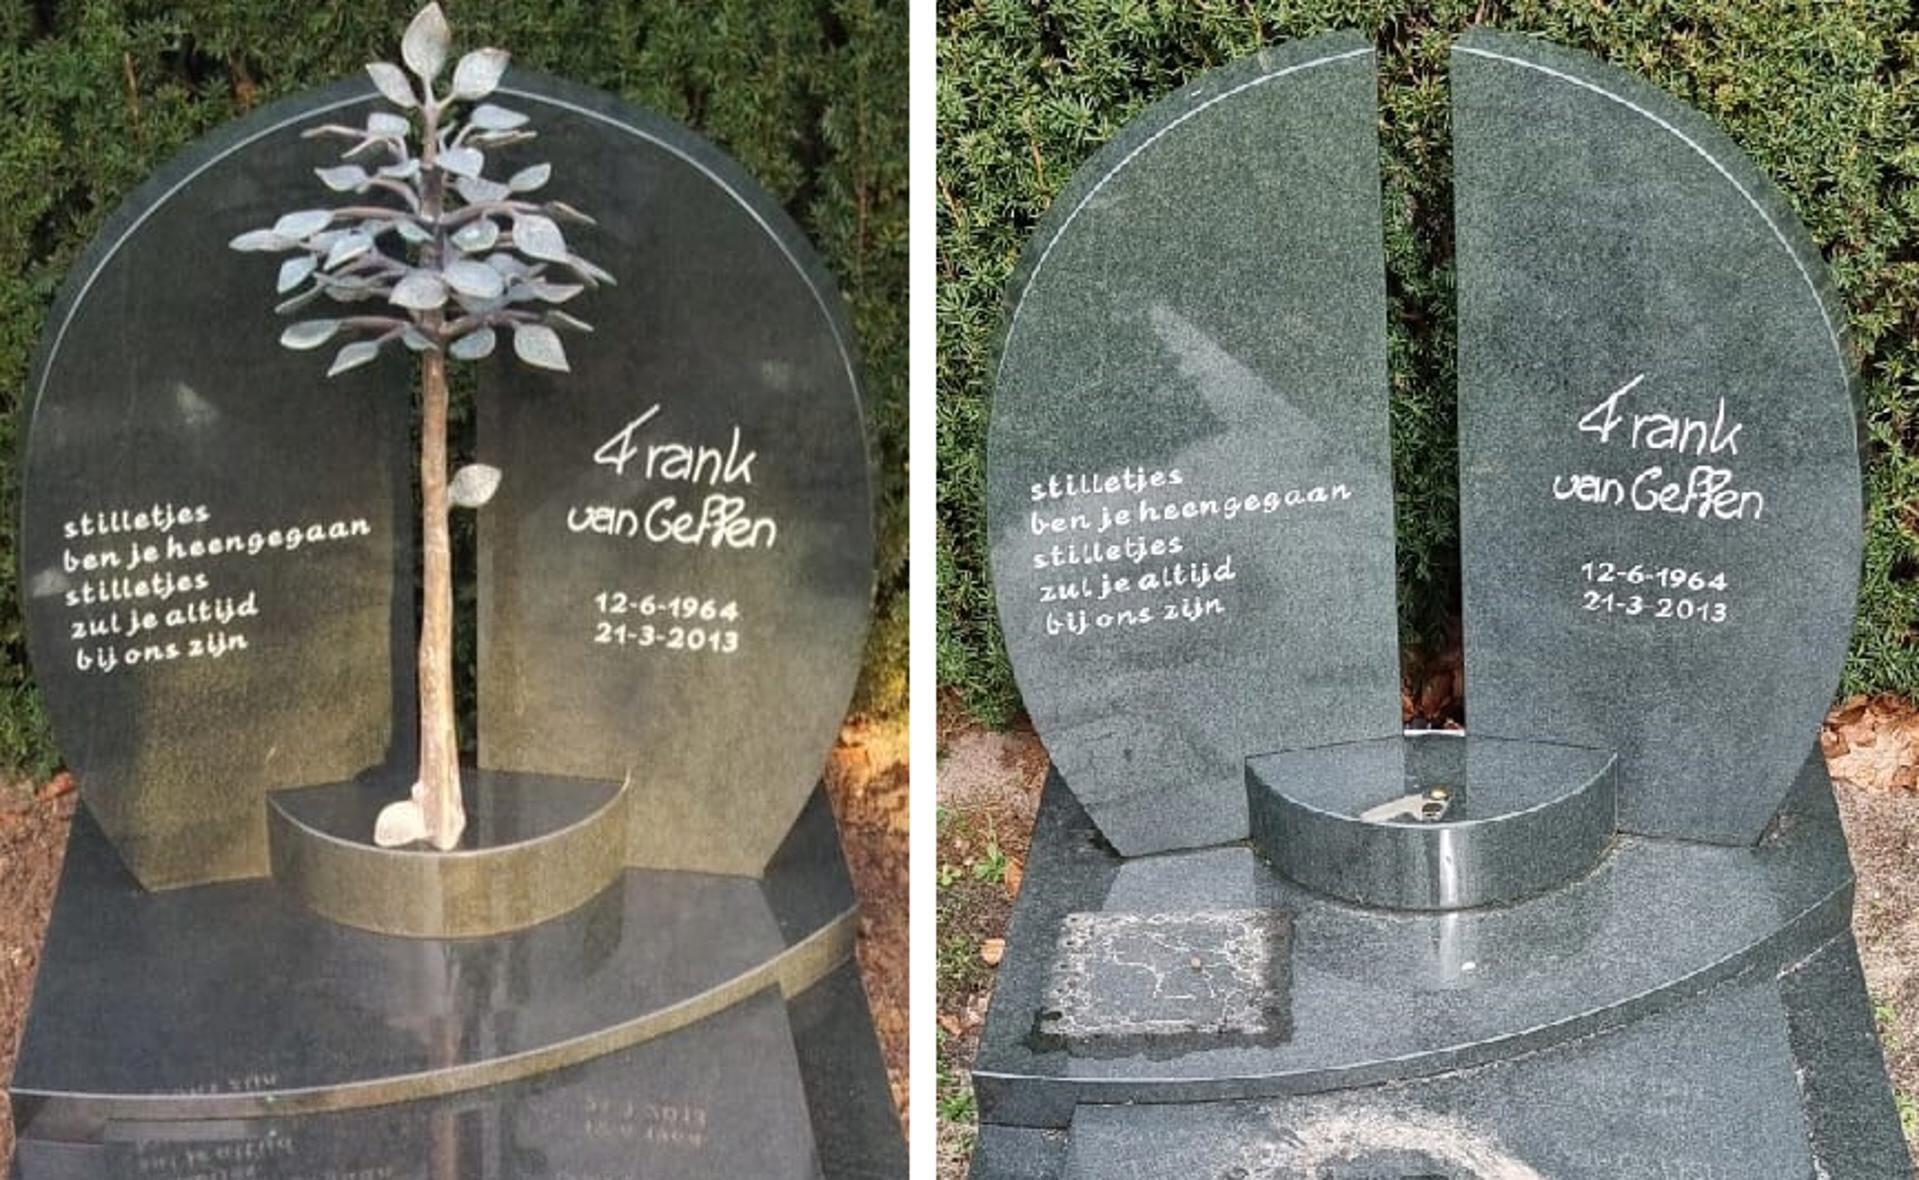 Het bronzen boompje ter nagedachtenis aan Frank van Geffen (links), is van diens graf op begraafplaats Munsel hoogstwaarschijnlijk gestolen (rechts).